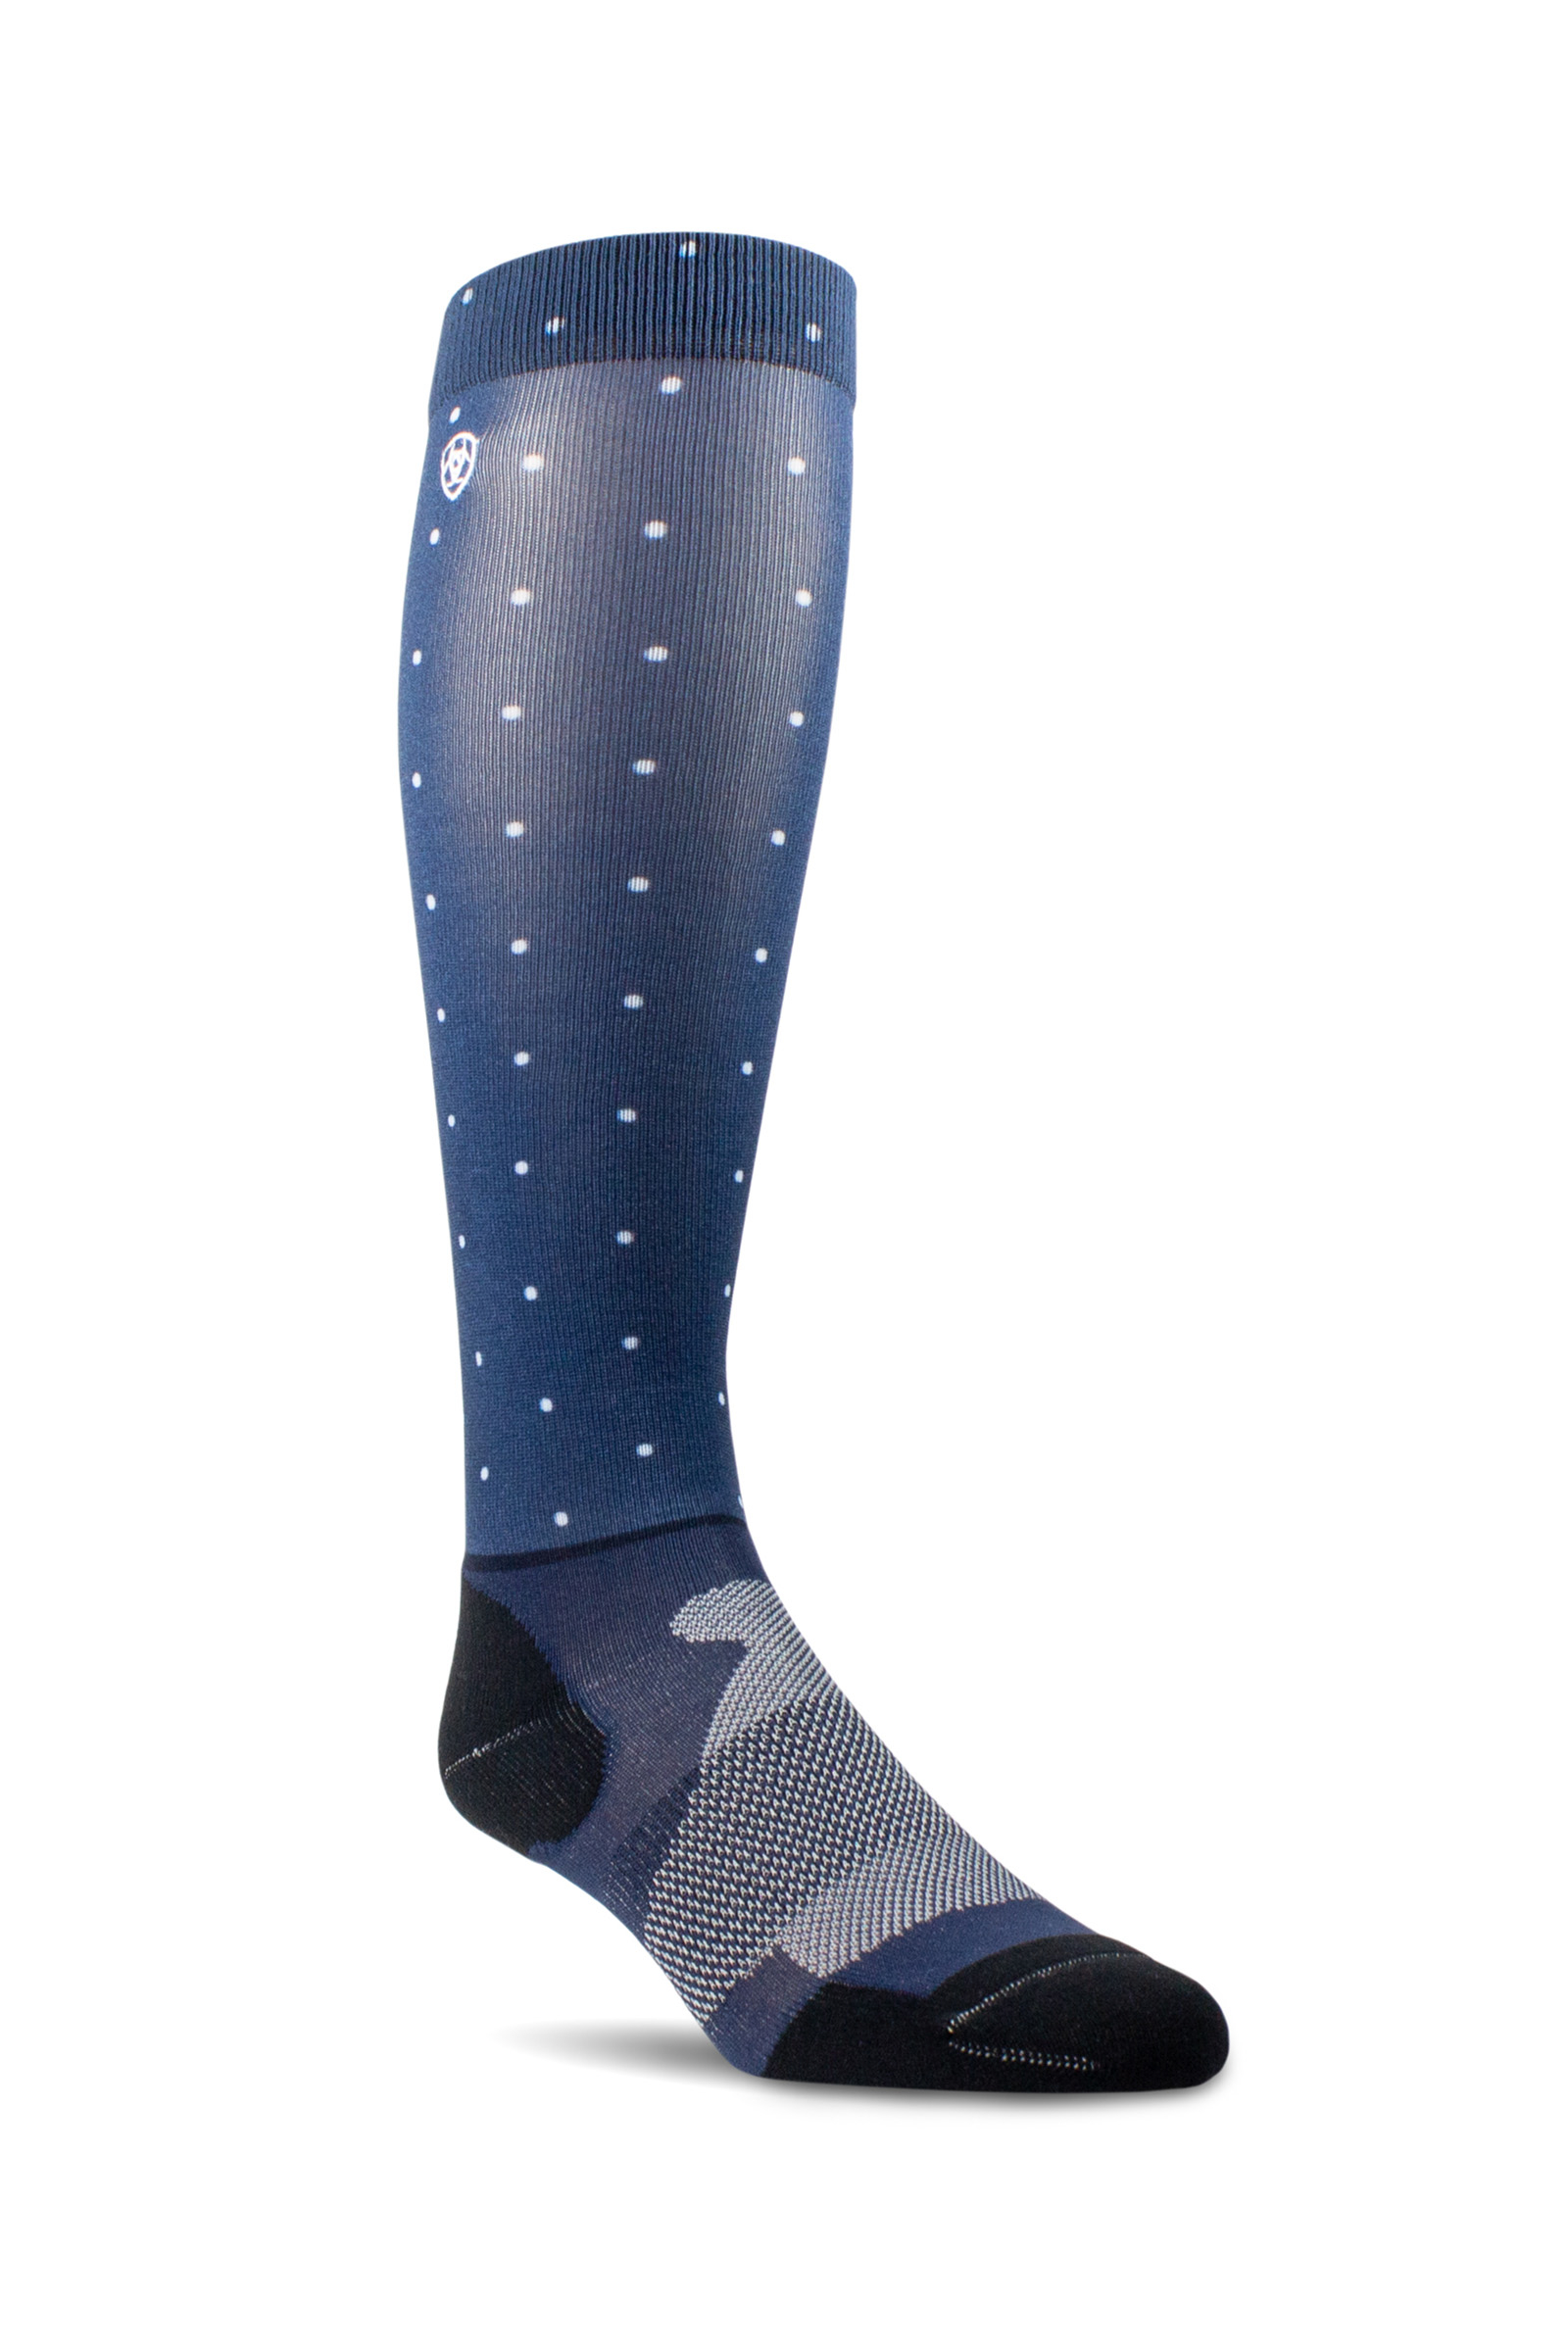 Ariat Tek Performance Boot Socks Artic/Navy